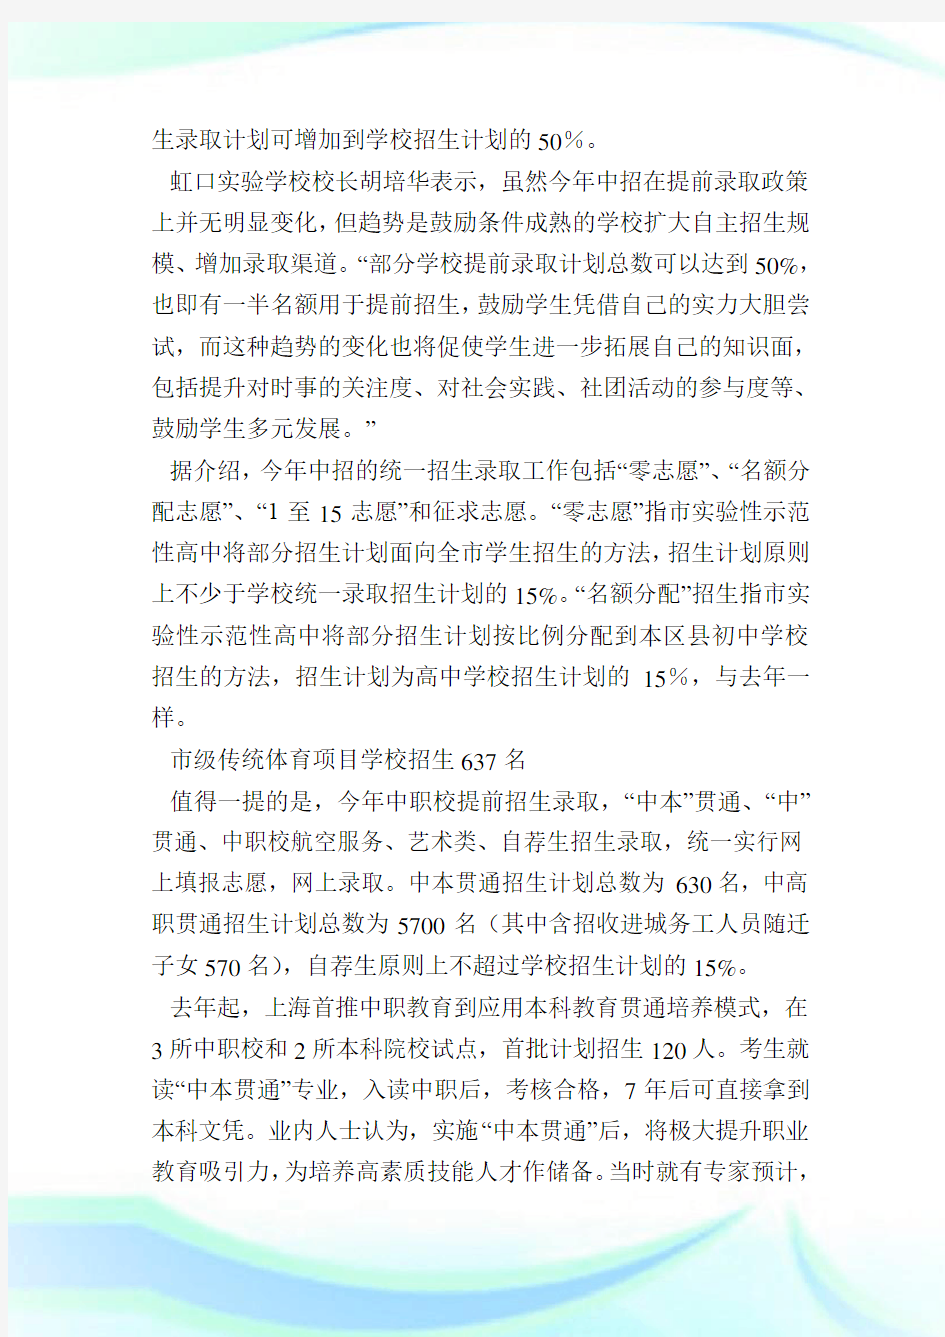 上海中考方案发布高中录取率98%左右.doc